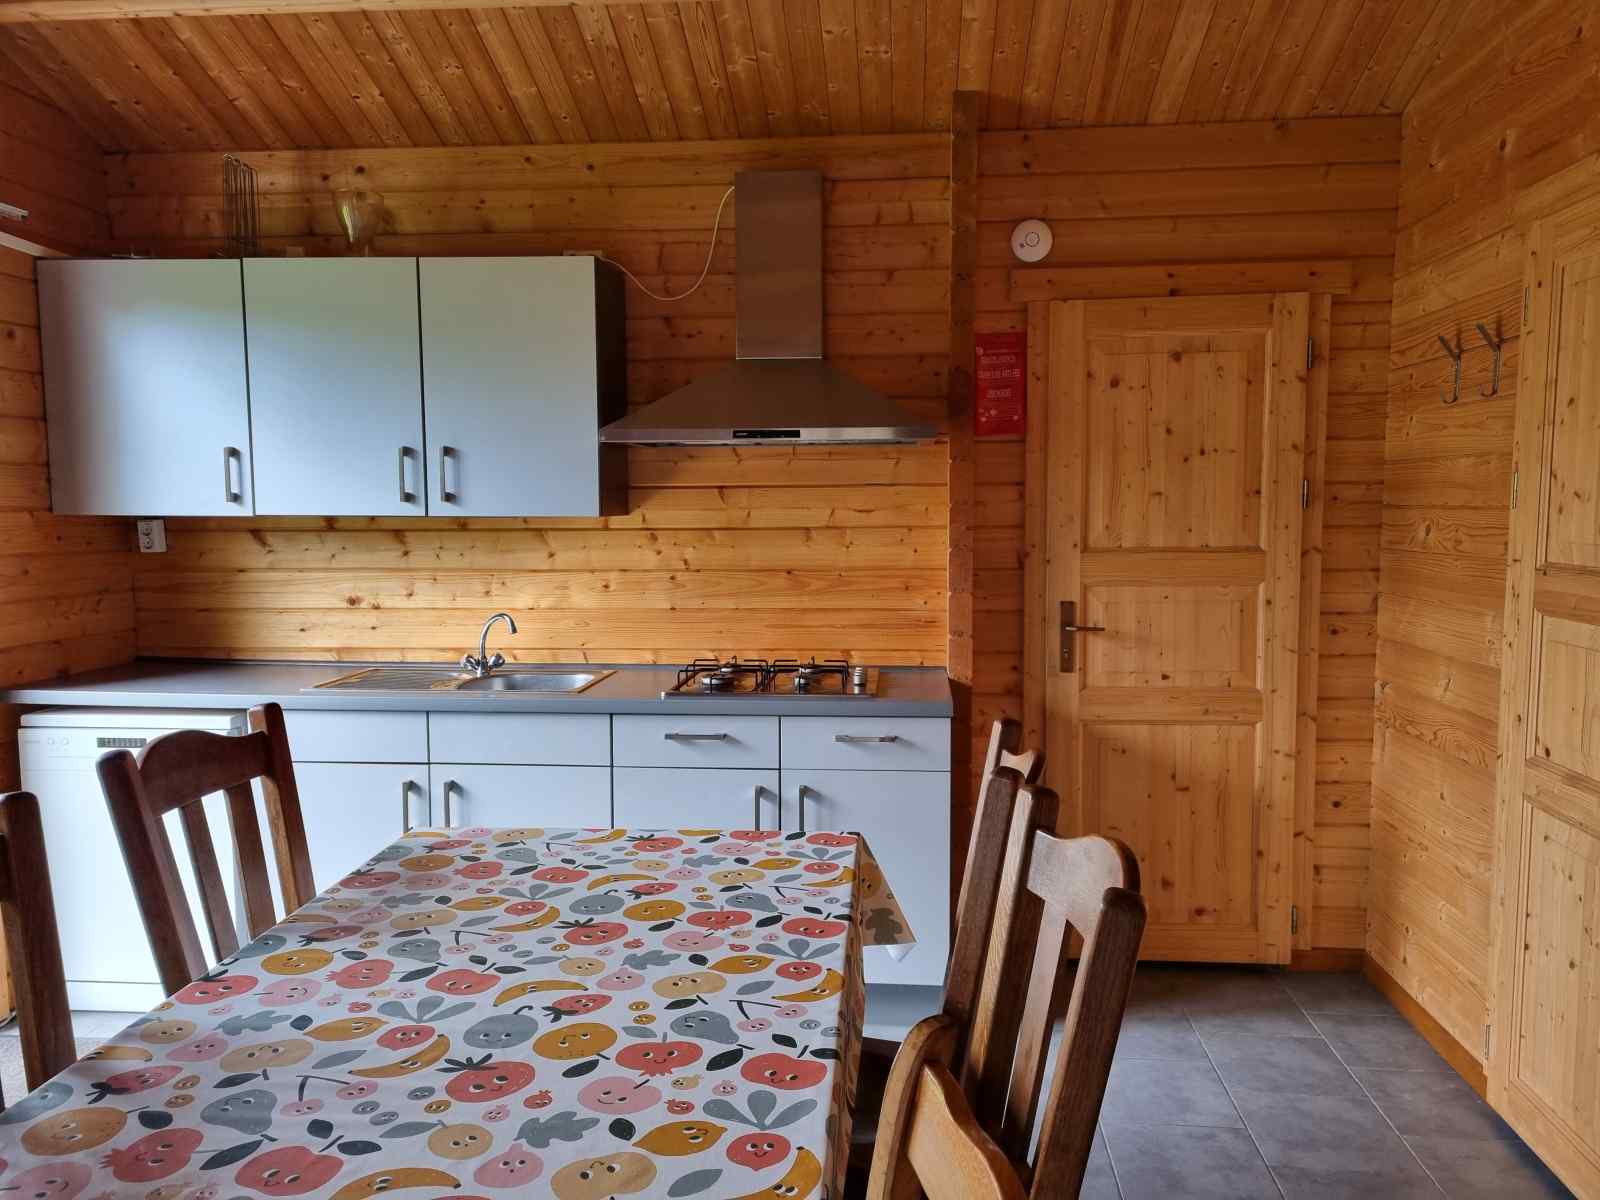 sfeervol-6-persoons-vakantiechalet-op-kindvriendelijke-mini-camping-in-ossenisse